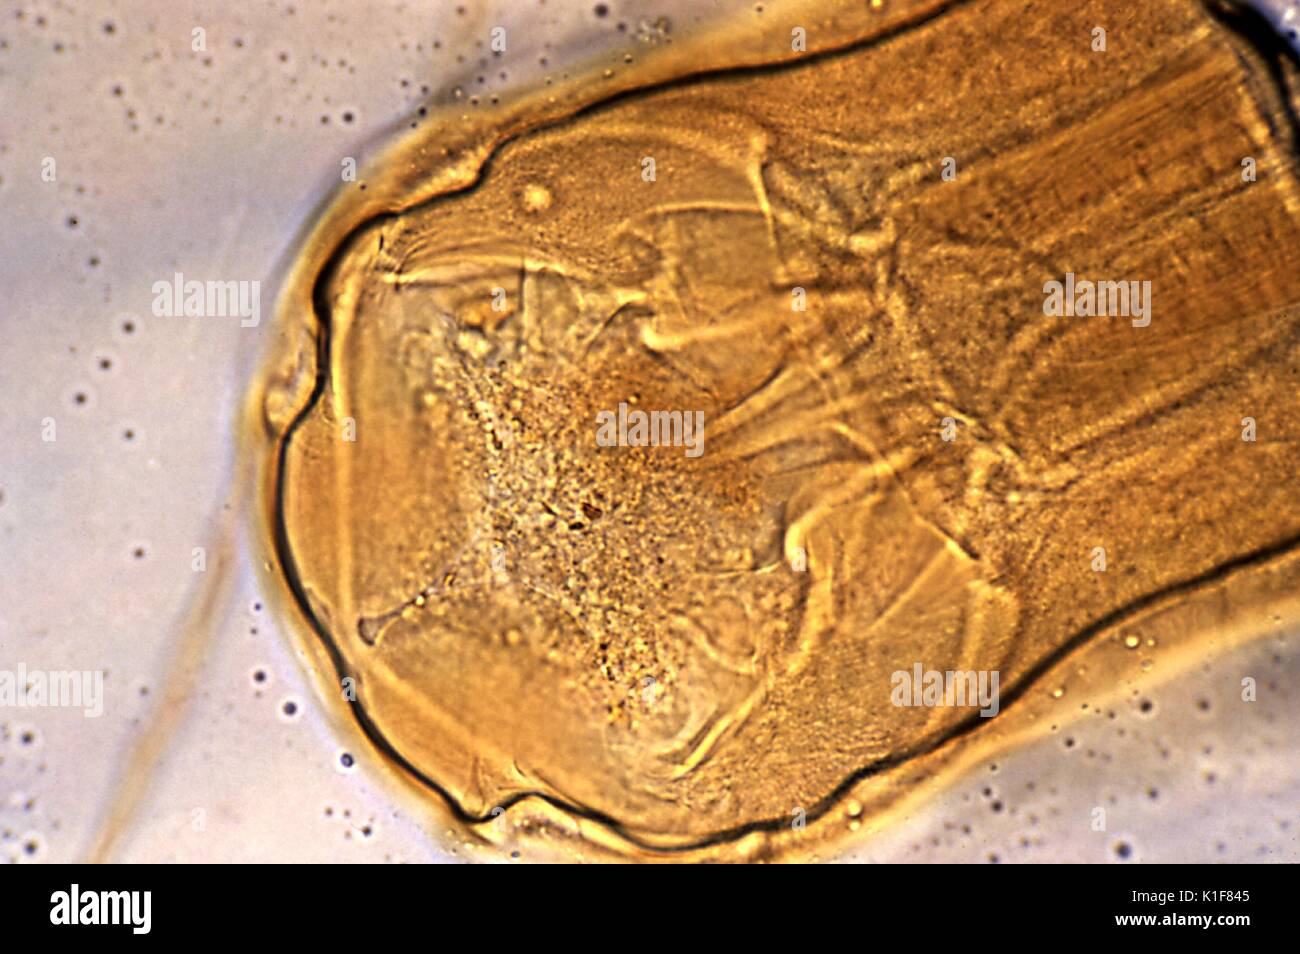 Dieses Bild zeigt den Kopf des hookworm Necator americanus, und sein Mund?s Schneiden von Platten, Mag. 400 X. Die hookworm verwendet diese scharfe Schneidezähne fest an der Darmwand zu erfassen, und zwar an der richtigen Stelle befestigt, nimmt das Host? s Blut, die Nährstoffe in dieser Art und Weise. Bild mit freundlicher Genehmigung von CDC/Dr. Mae Melvin, 1982. Stockfoto